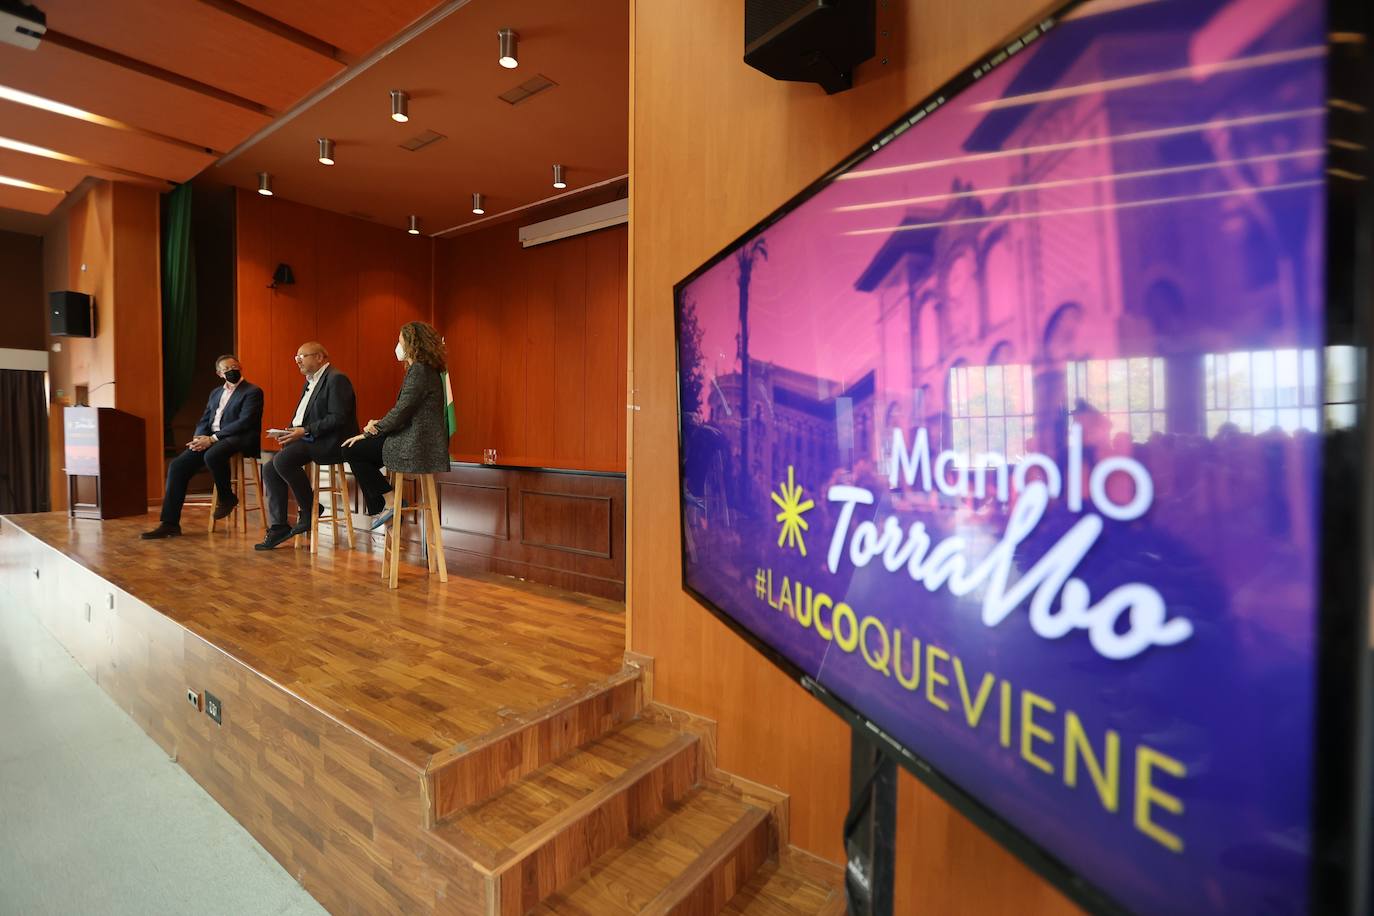 La presentación de la candidatura a rector de la UCO de Manuel Torralbo, en imágenes